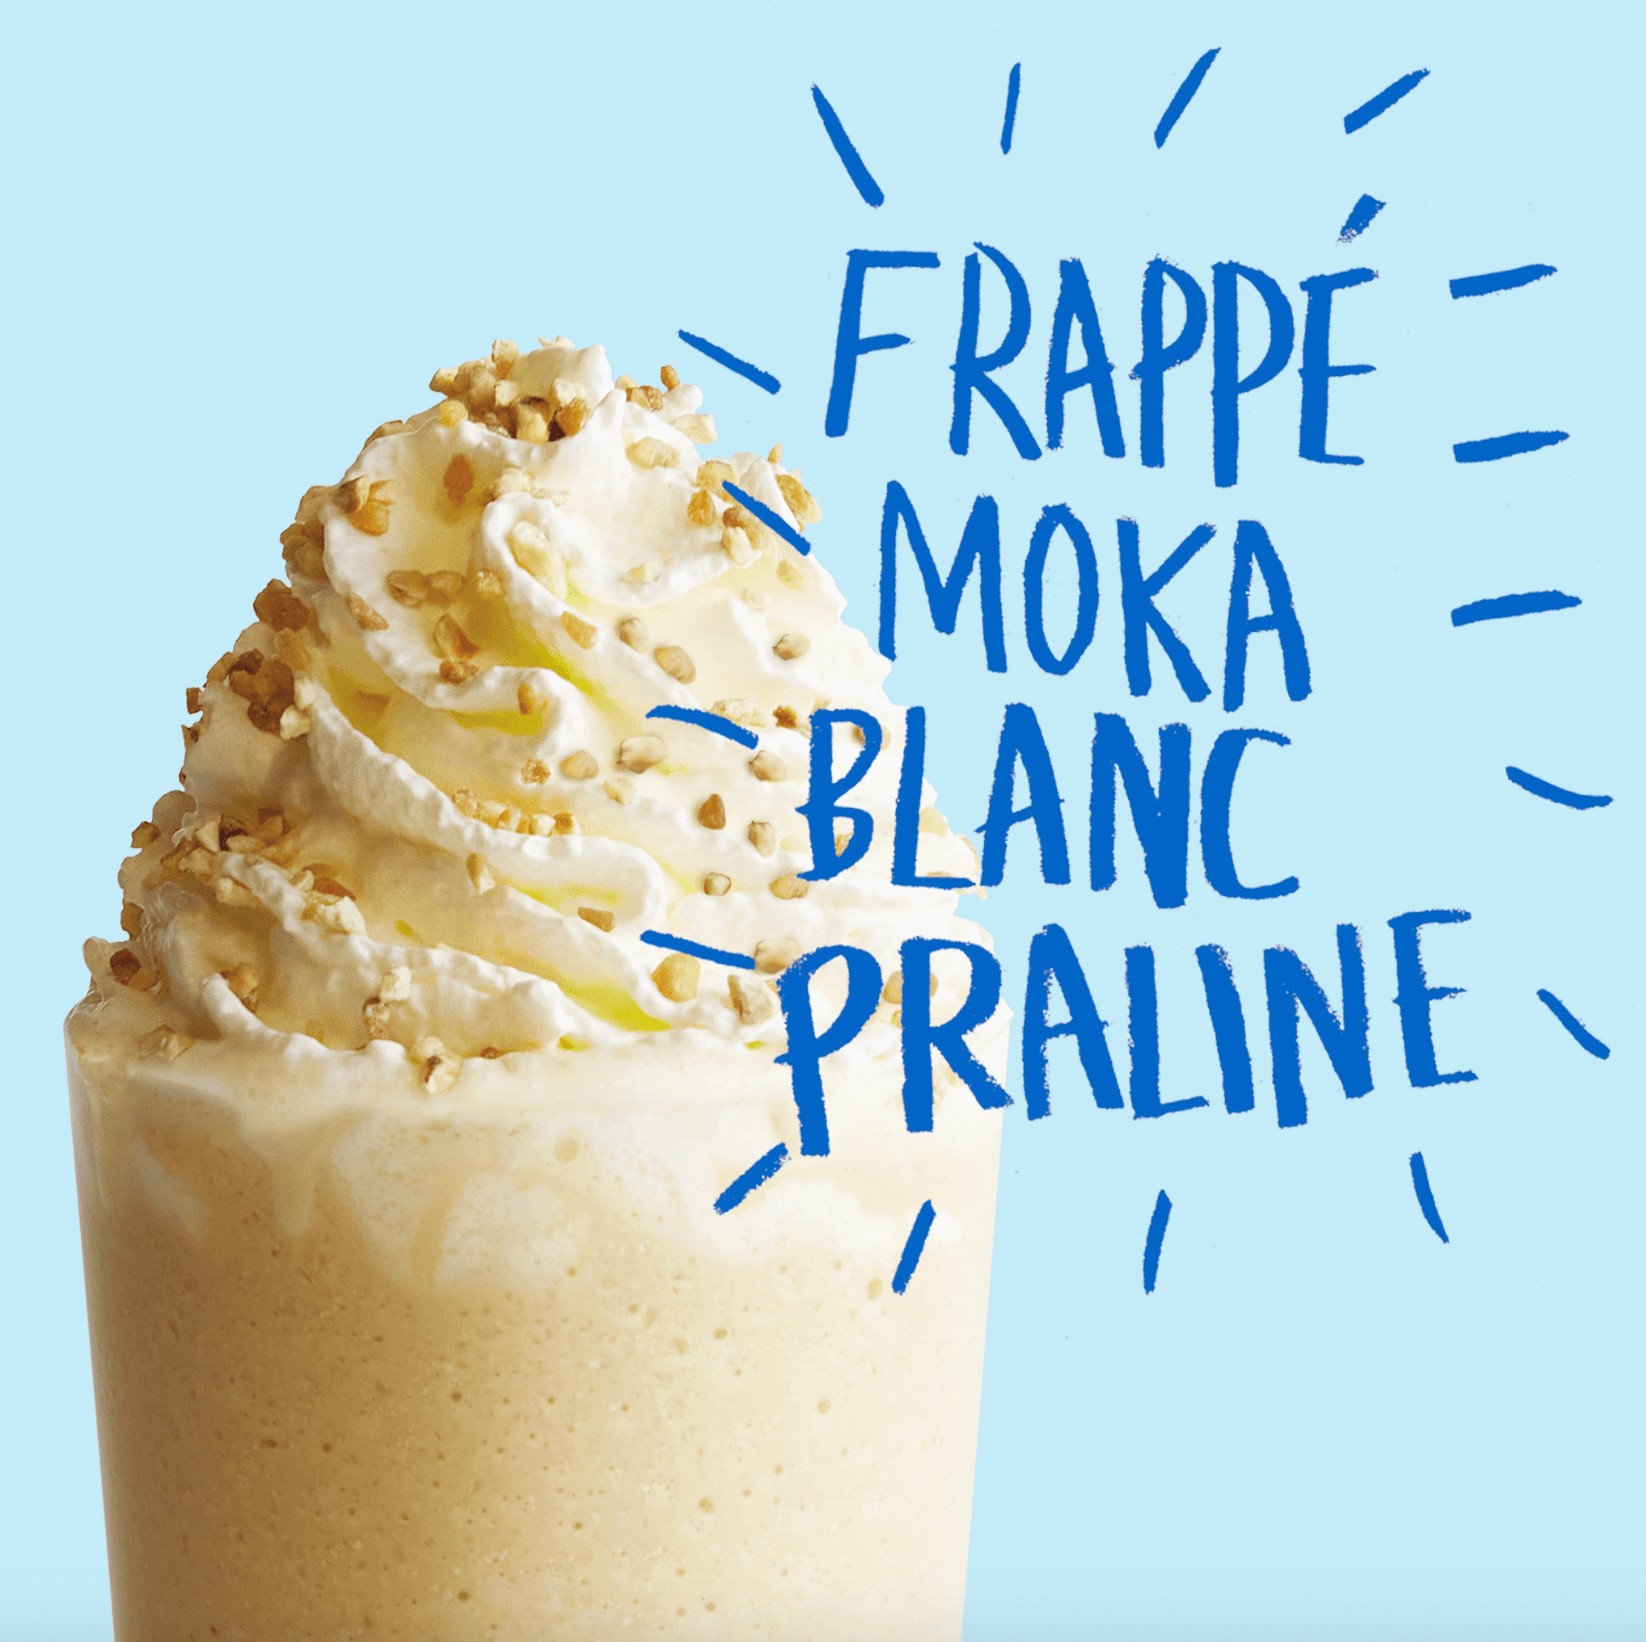 Le Frappé Moka blanc Praline pour les gourmands !